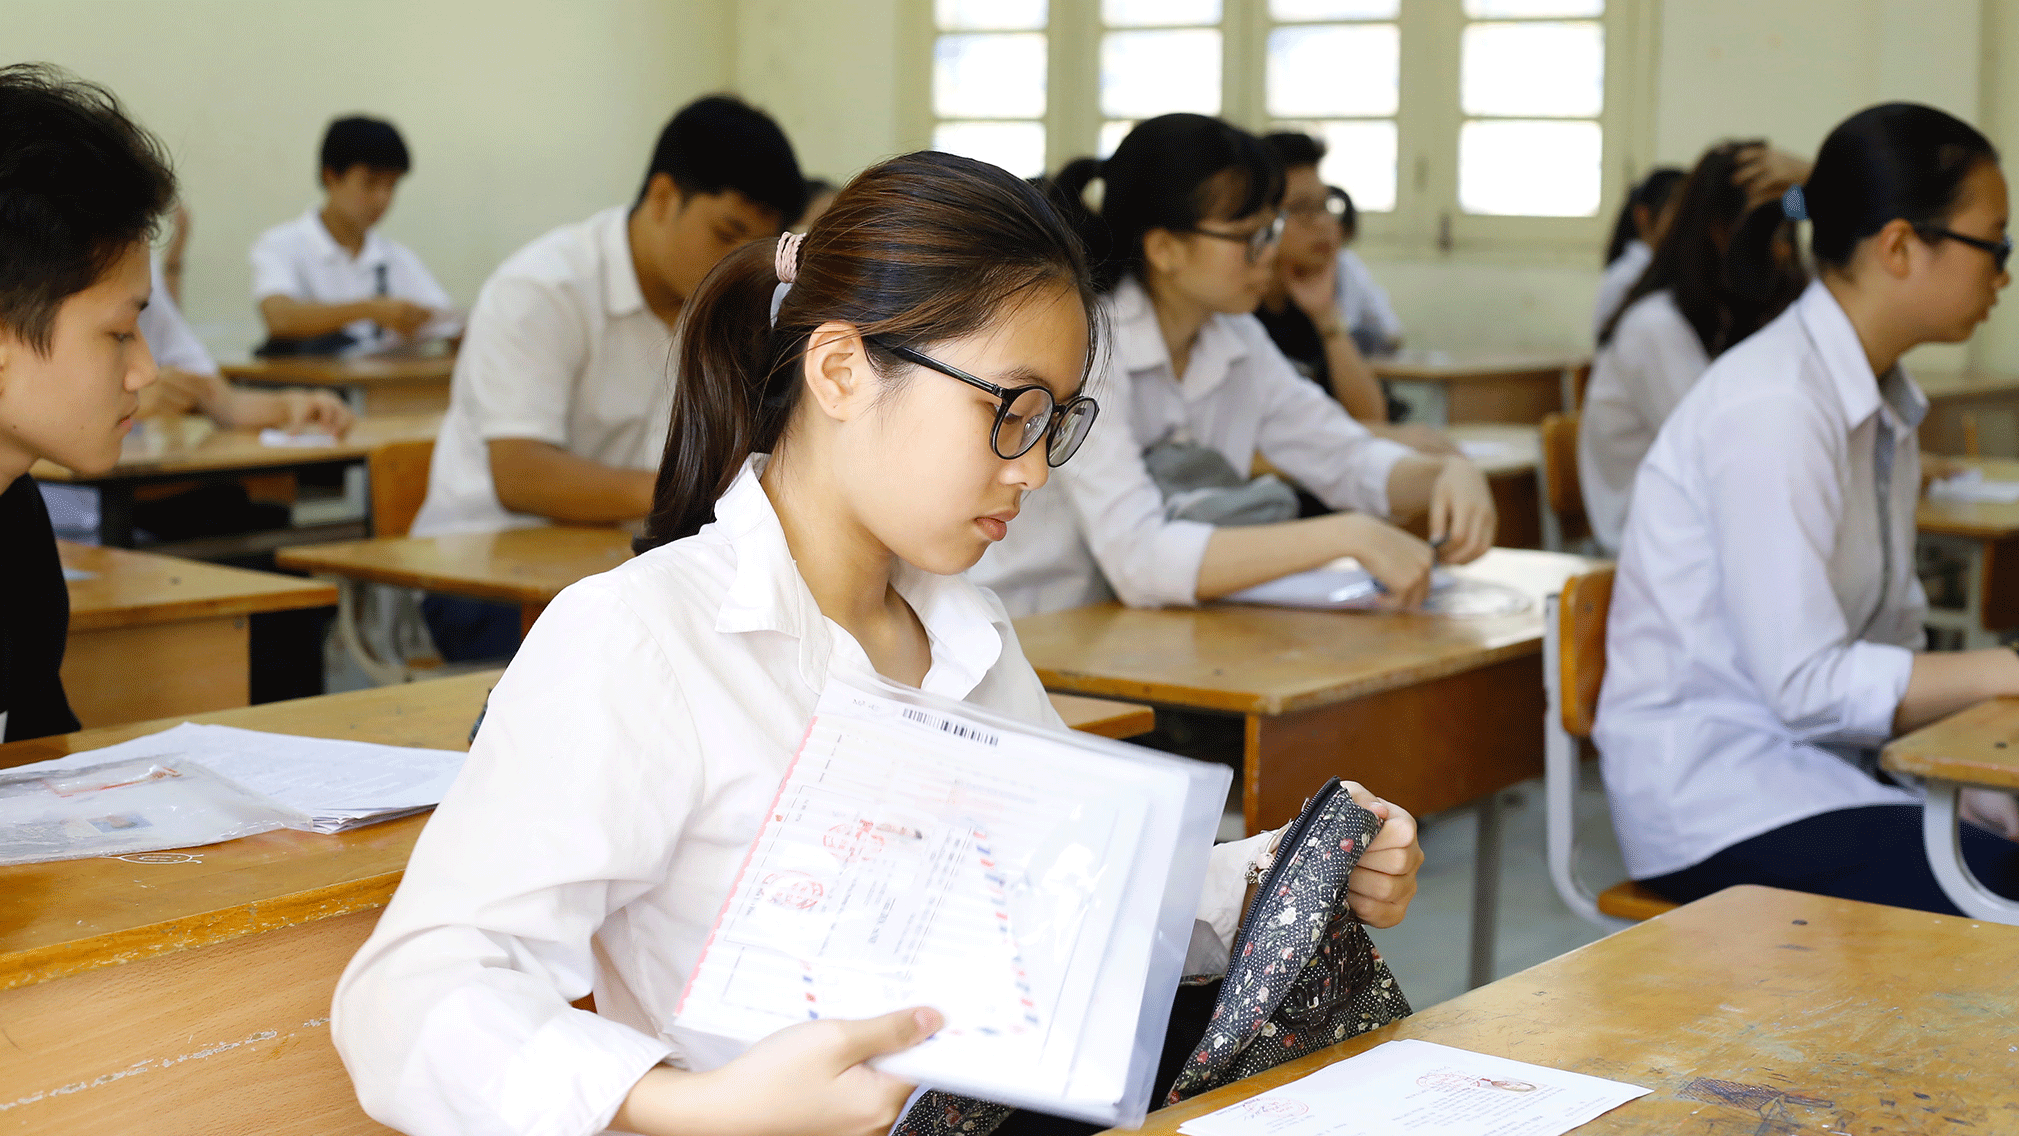 Thi lớp 10 ở Hà Nội: Không bật điều hoà, cha mẹ không được tập trung ở cổng trường - Ảnh 2.